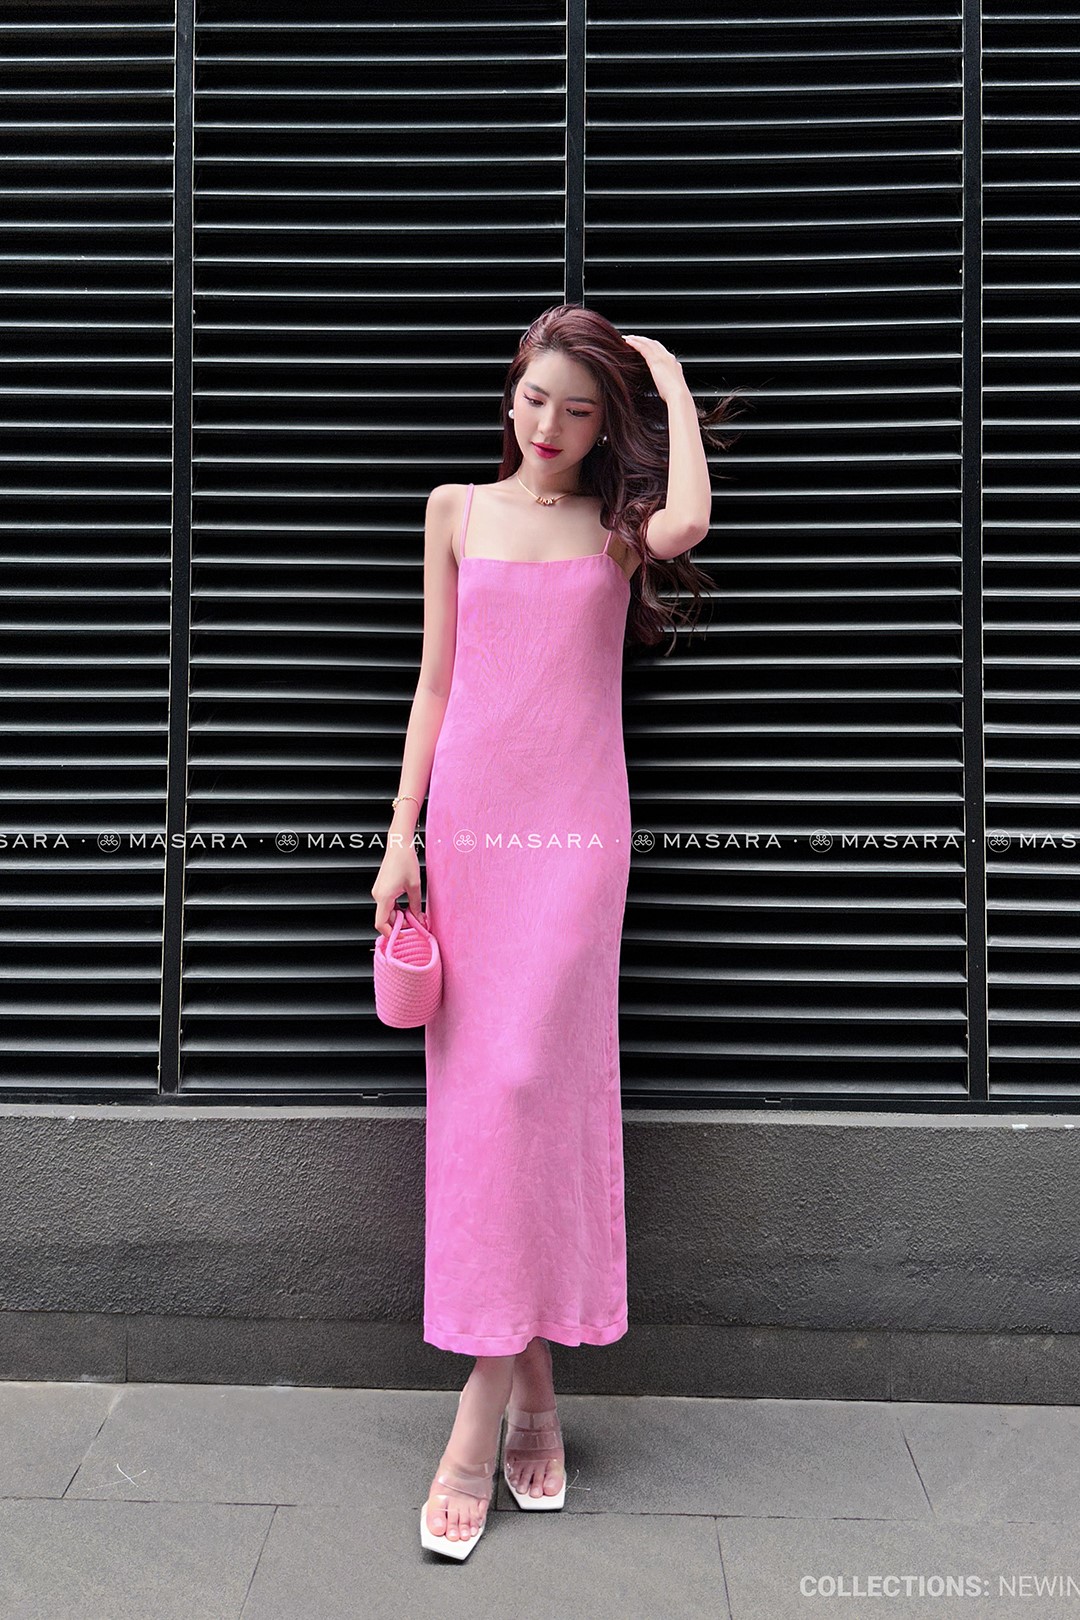 VELLE DESIGN chân váy lụa Dilys chất liệu vải lụa hongkong cao cấp